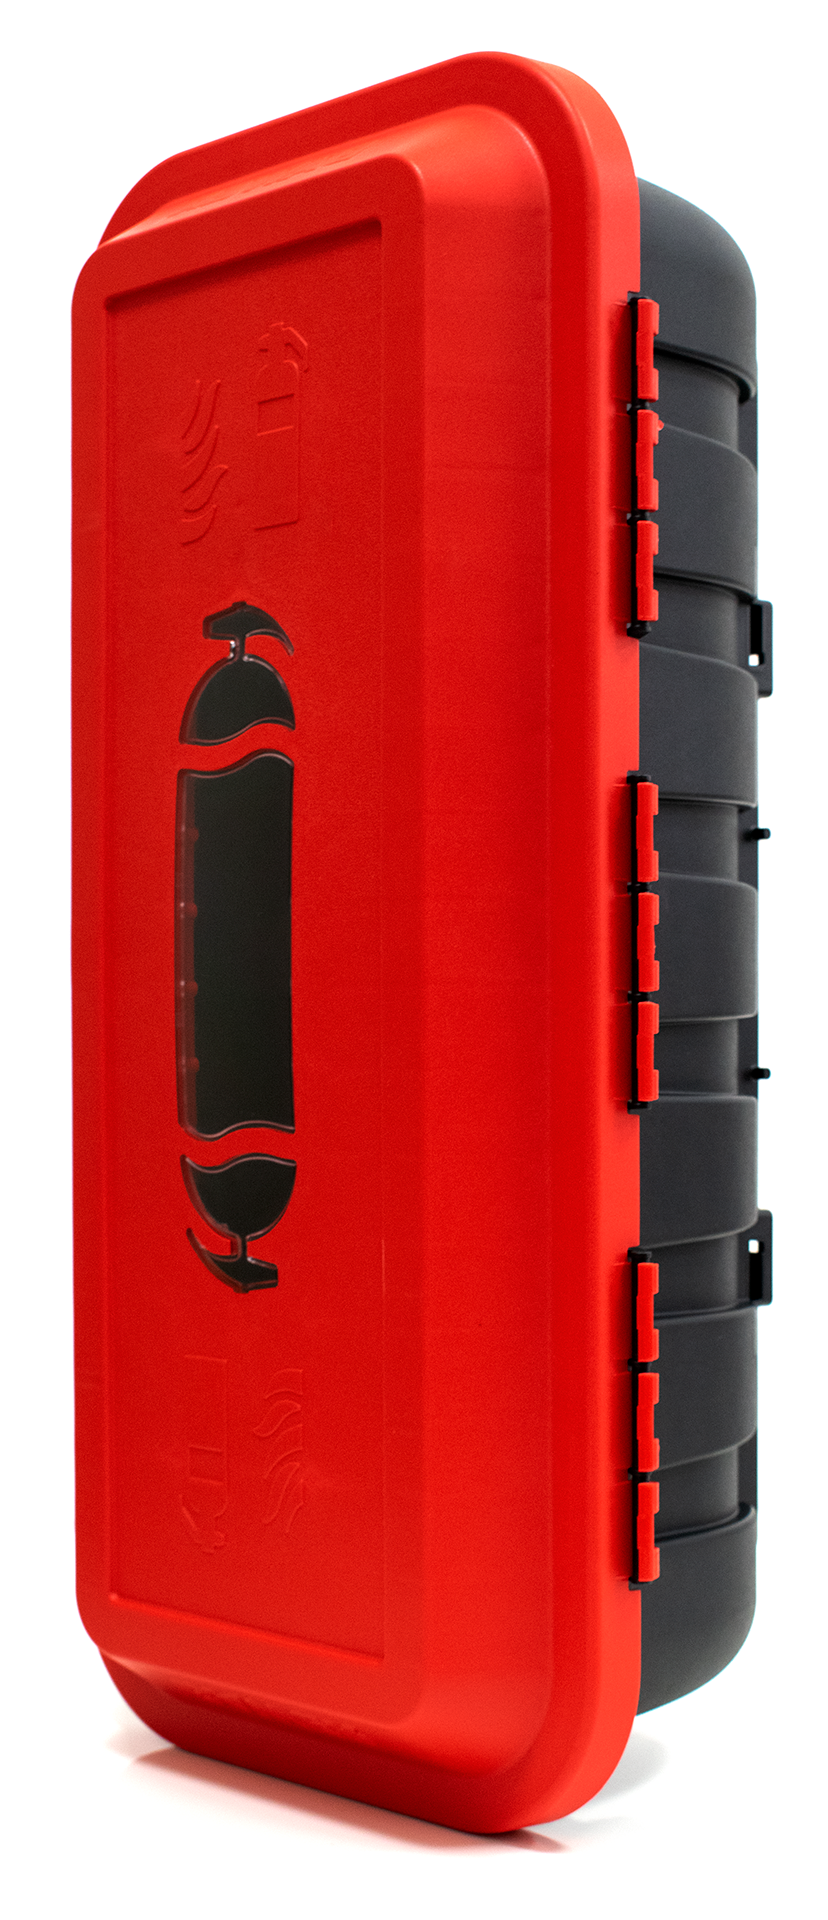 Bedna na hasicí přístroj hp 6kg - 620x280x215 mm, plast, červeno / černá, bawer